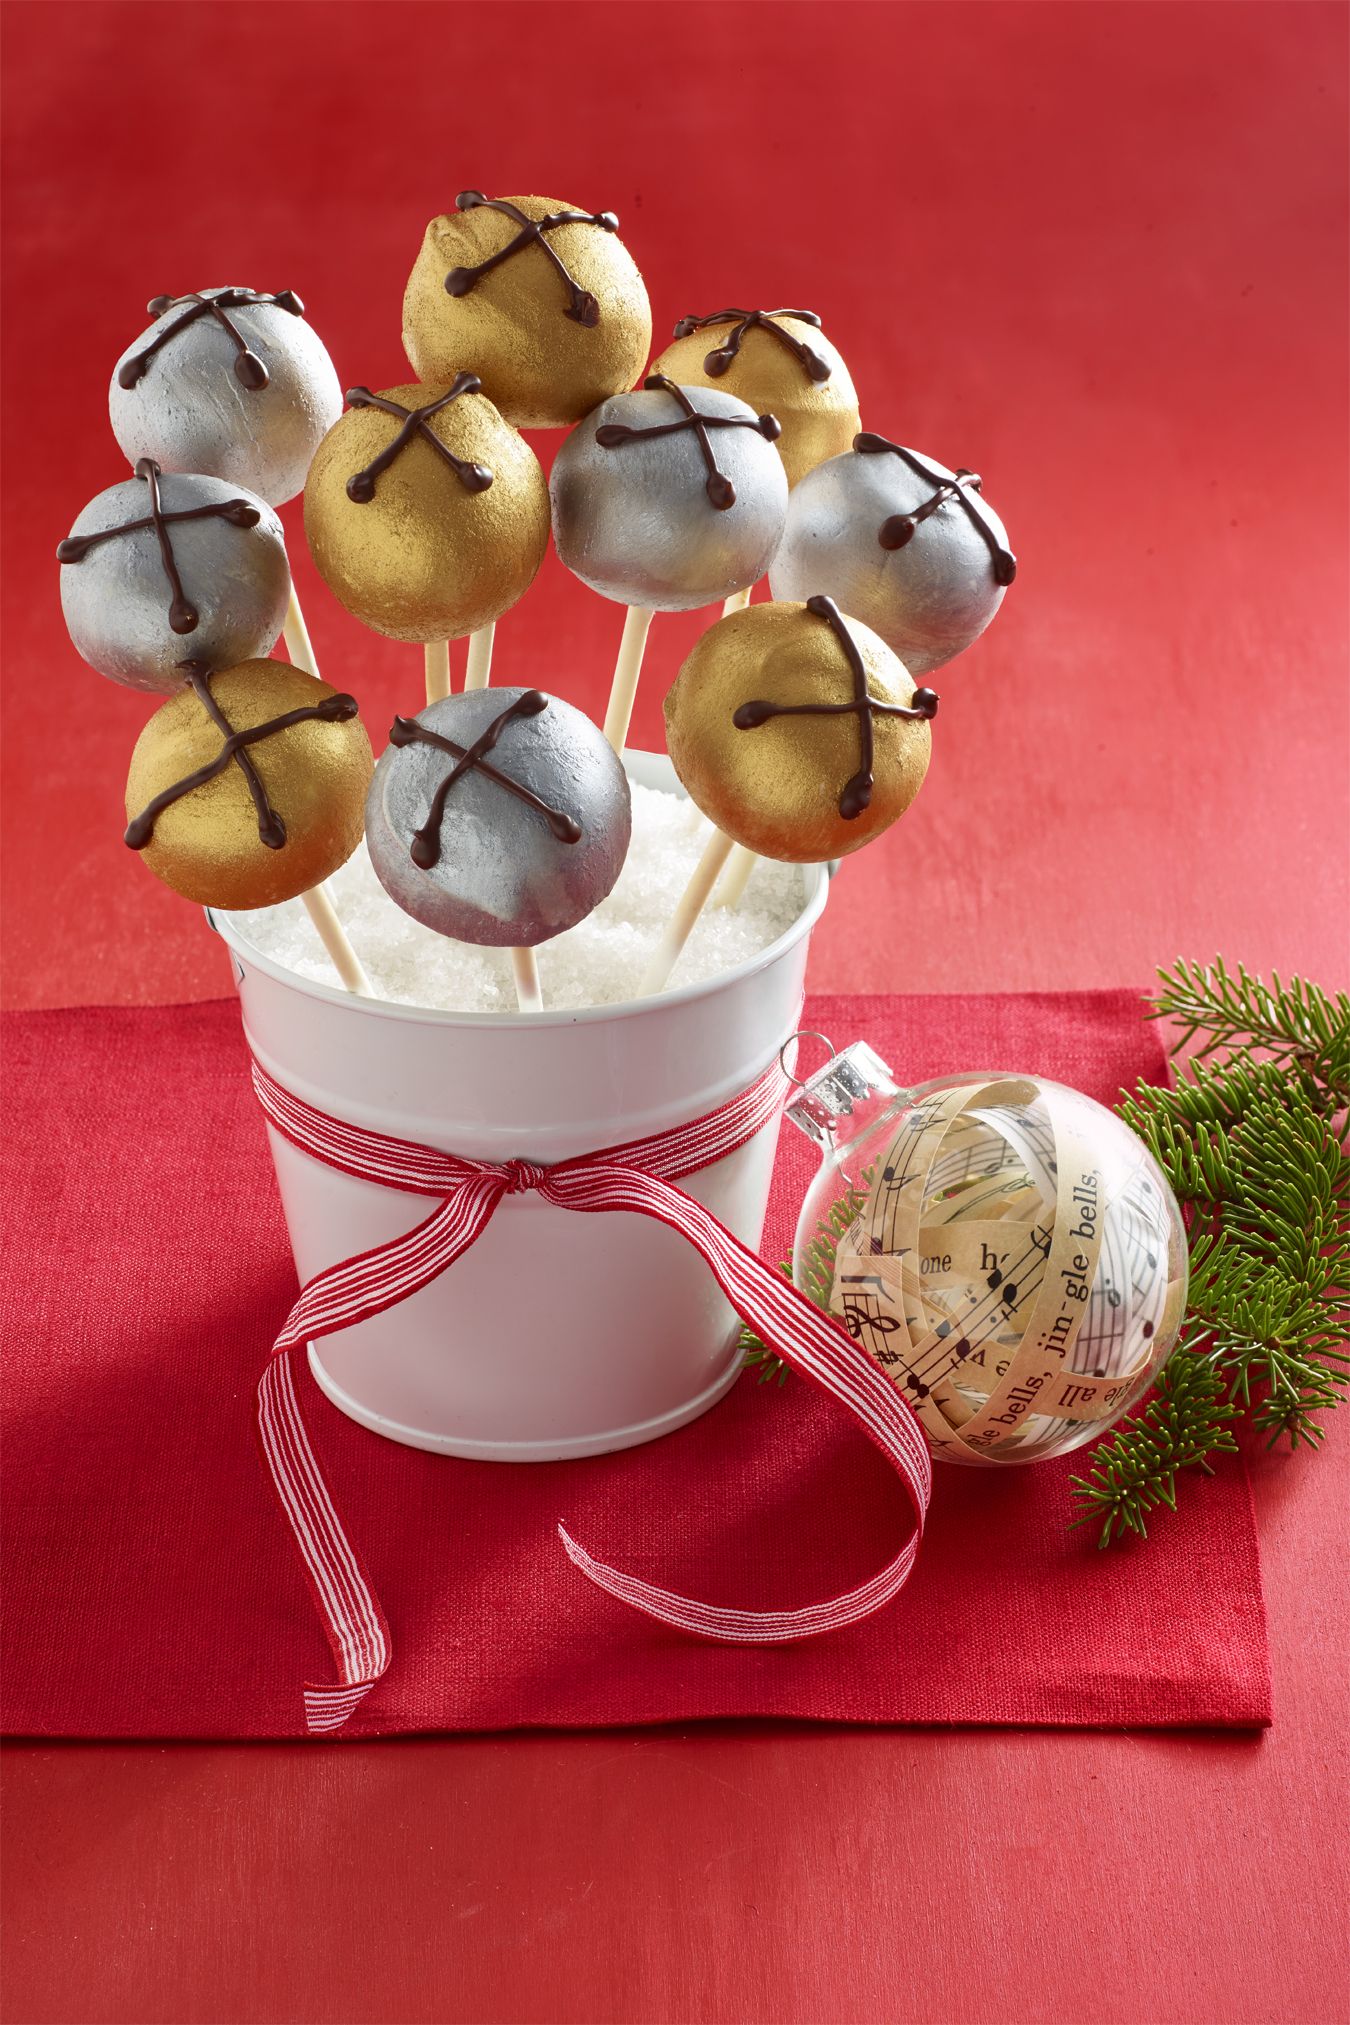 Best Jingle Bells Peanut Butter Pops Recipe - How To Make Jingle Bells  Peanut Butter Pops 